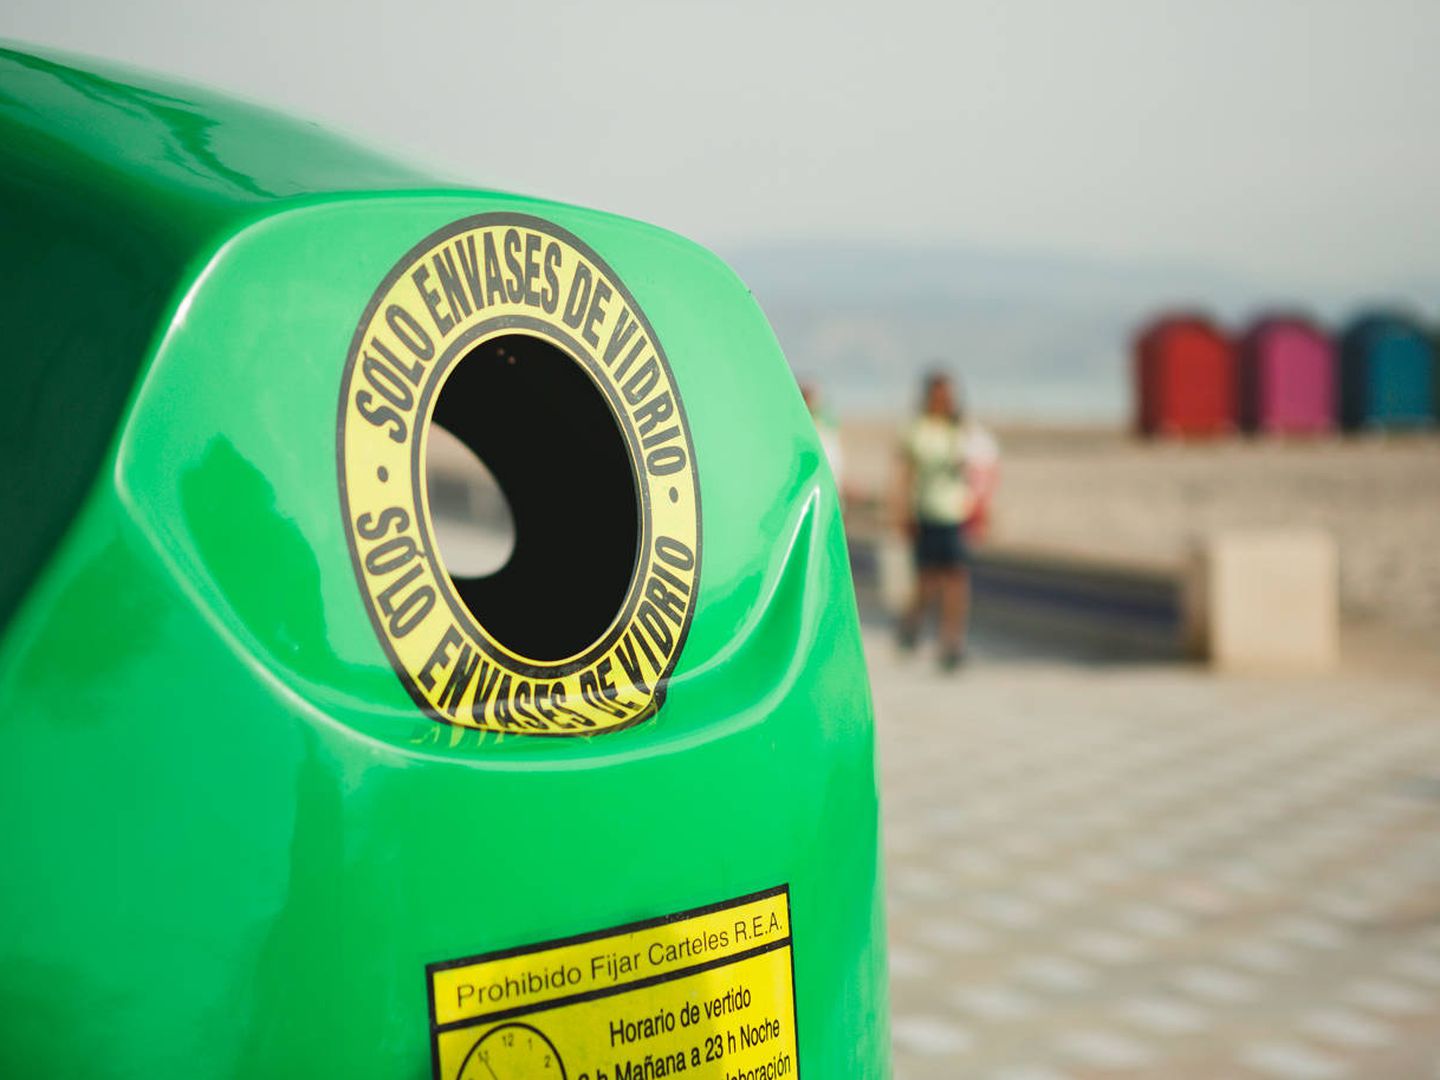 Los ciudadanos han seguido reciclando durante la pandemia (Ecovidrio)